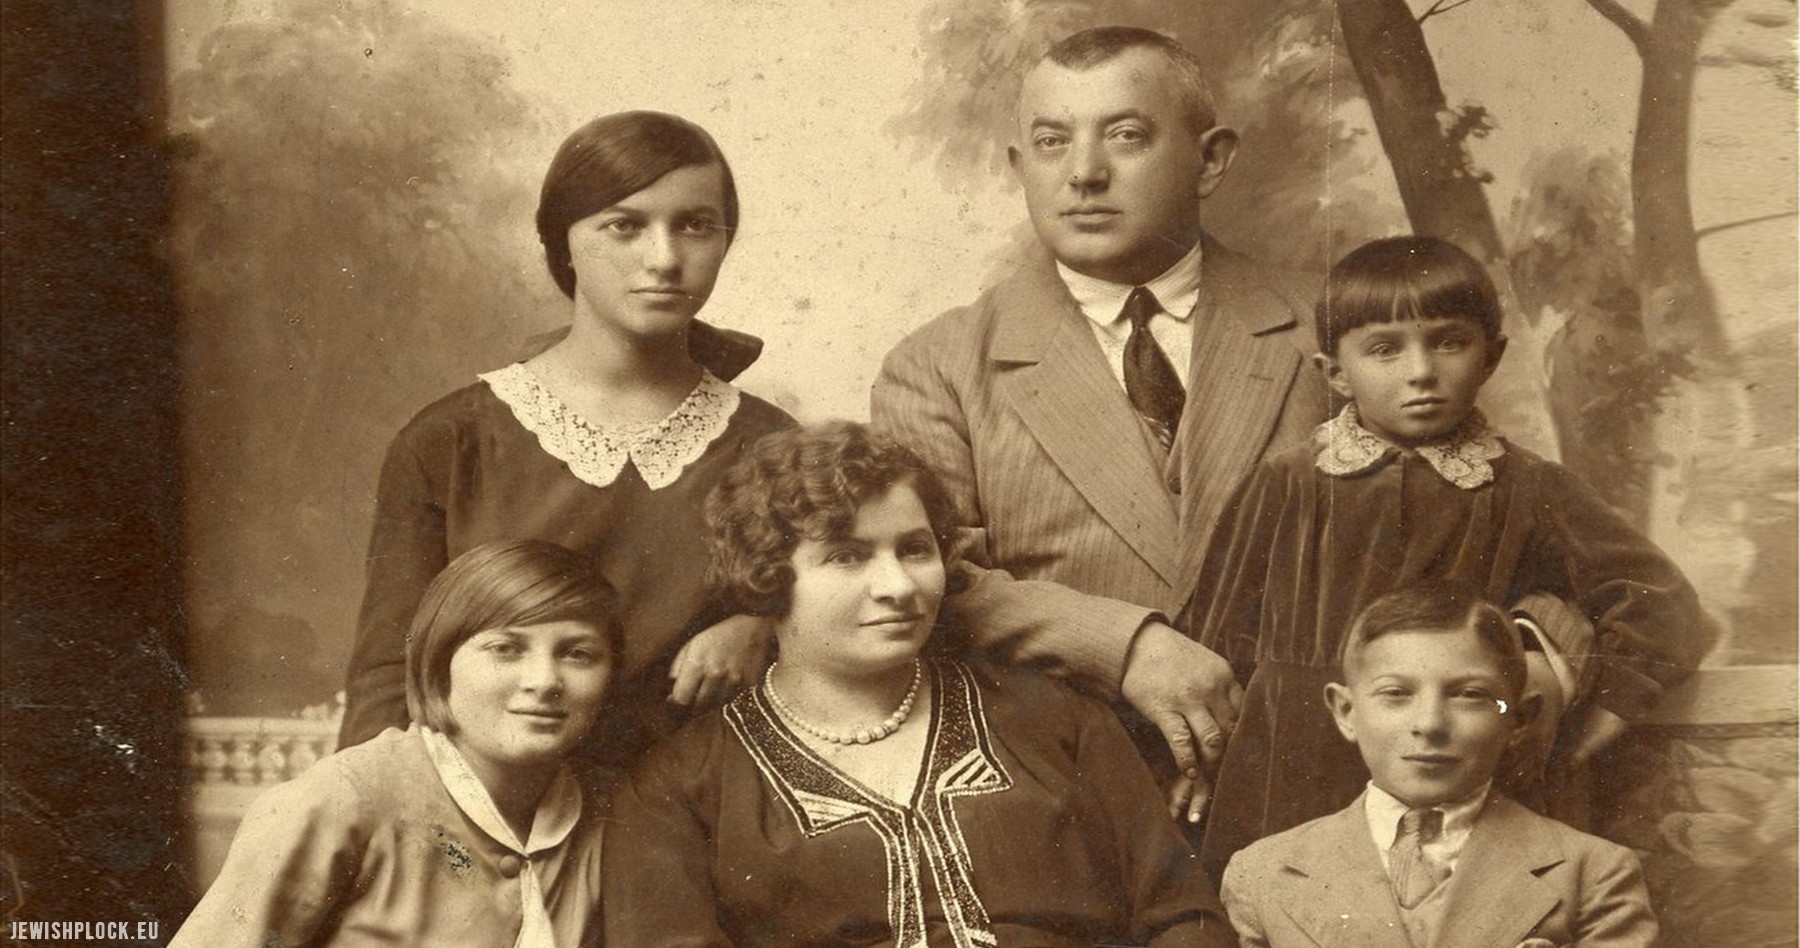 The Brygart family, JewishPlock.eu